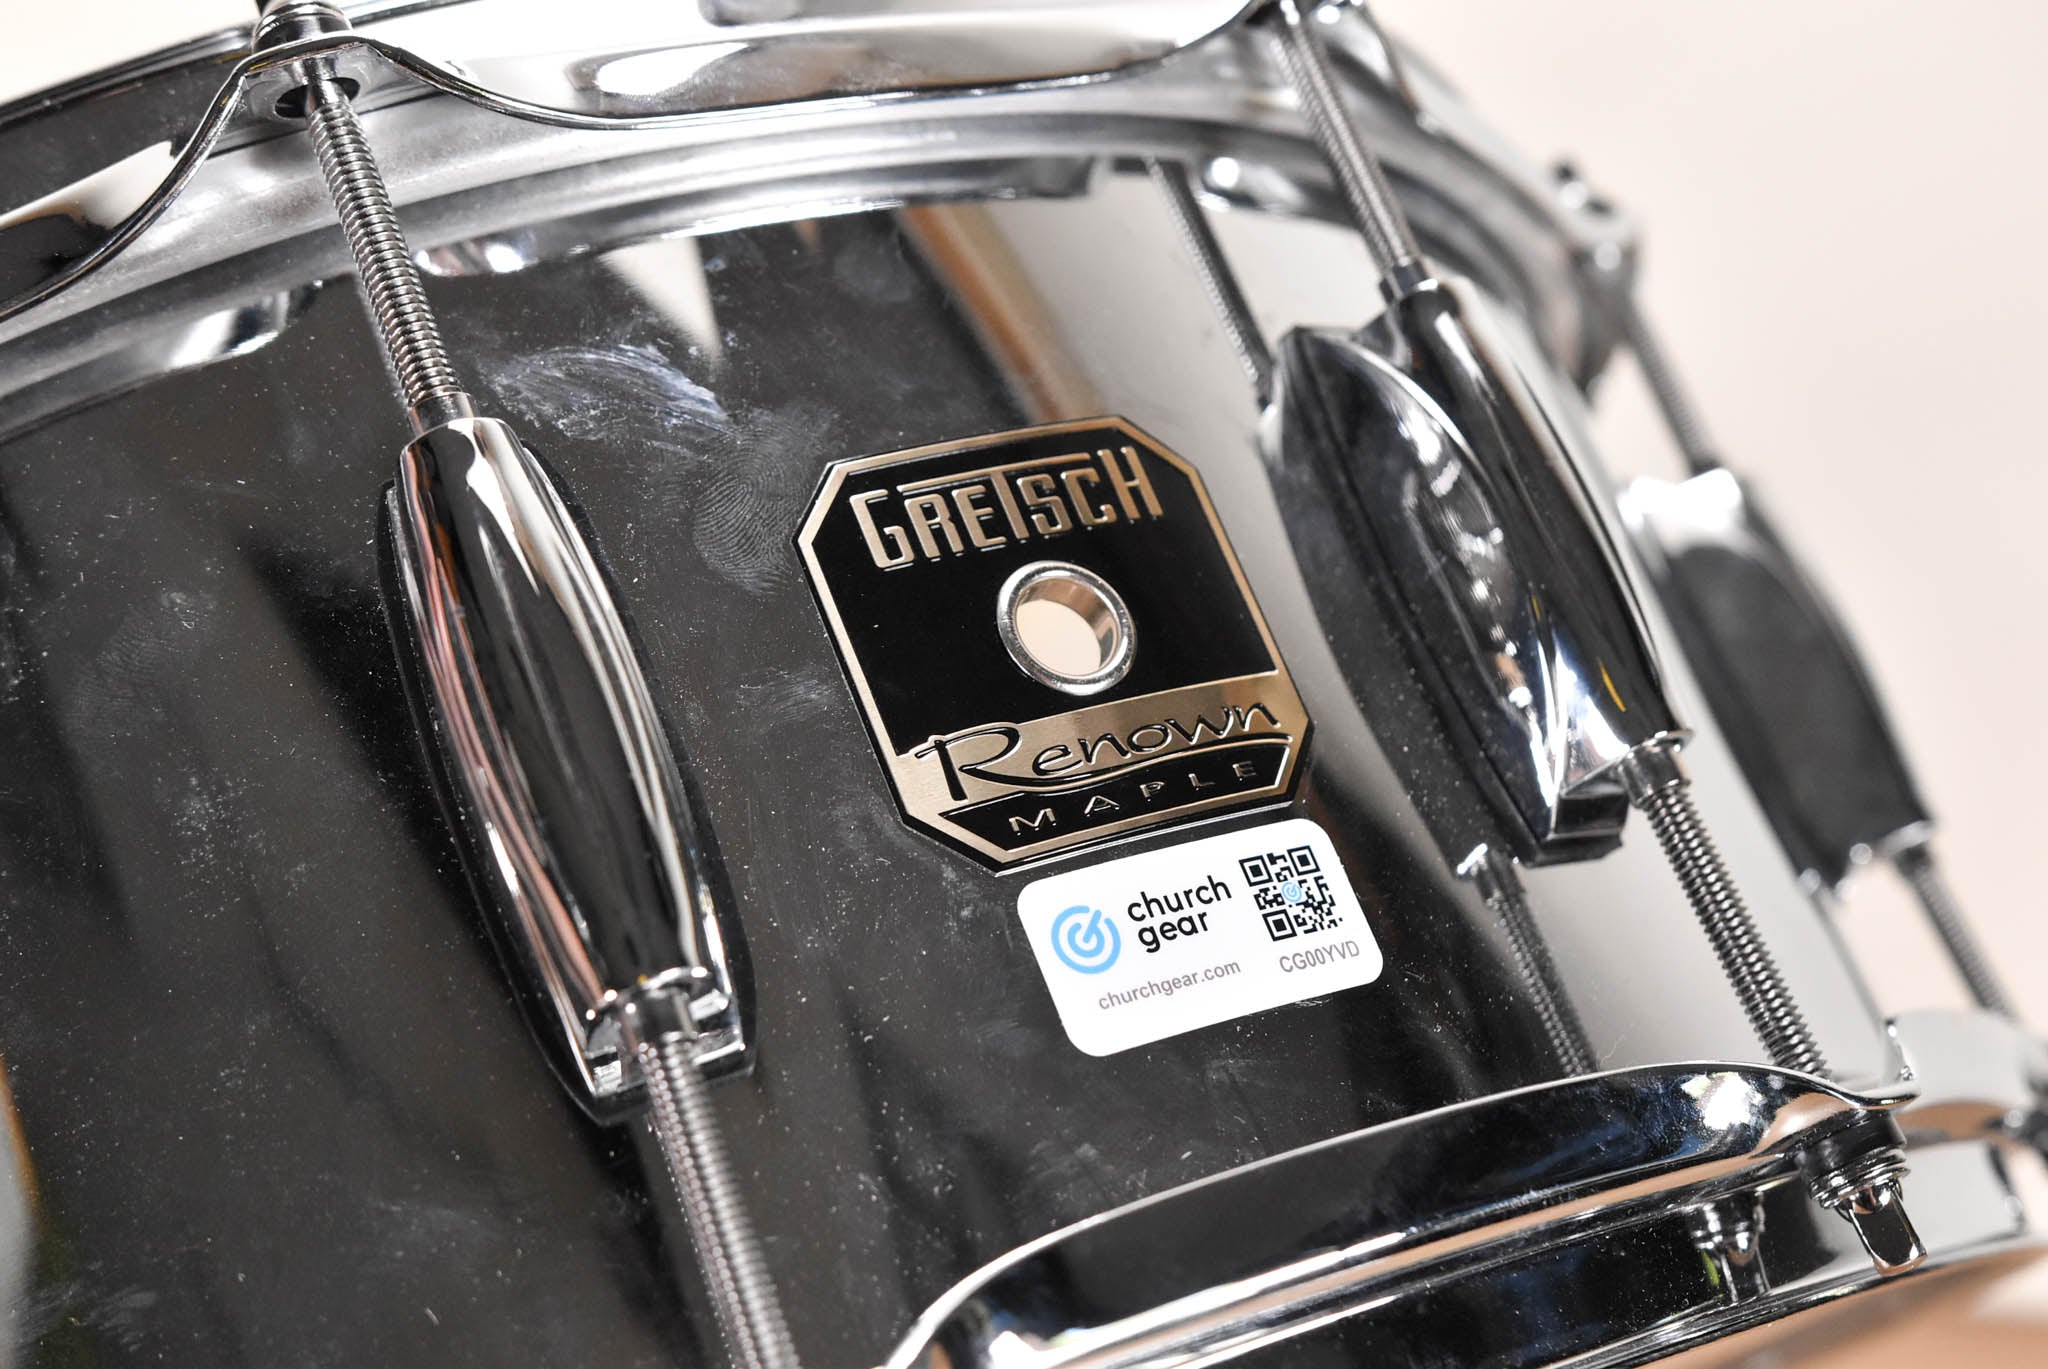 Gretsch Renown Maple Snare Drum - 14" x 5.5"